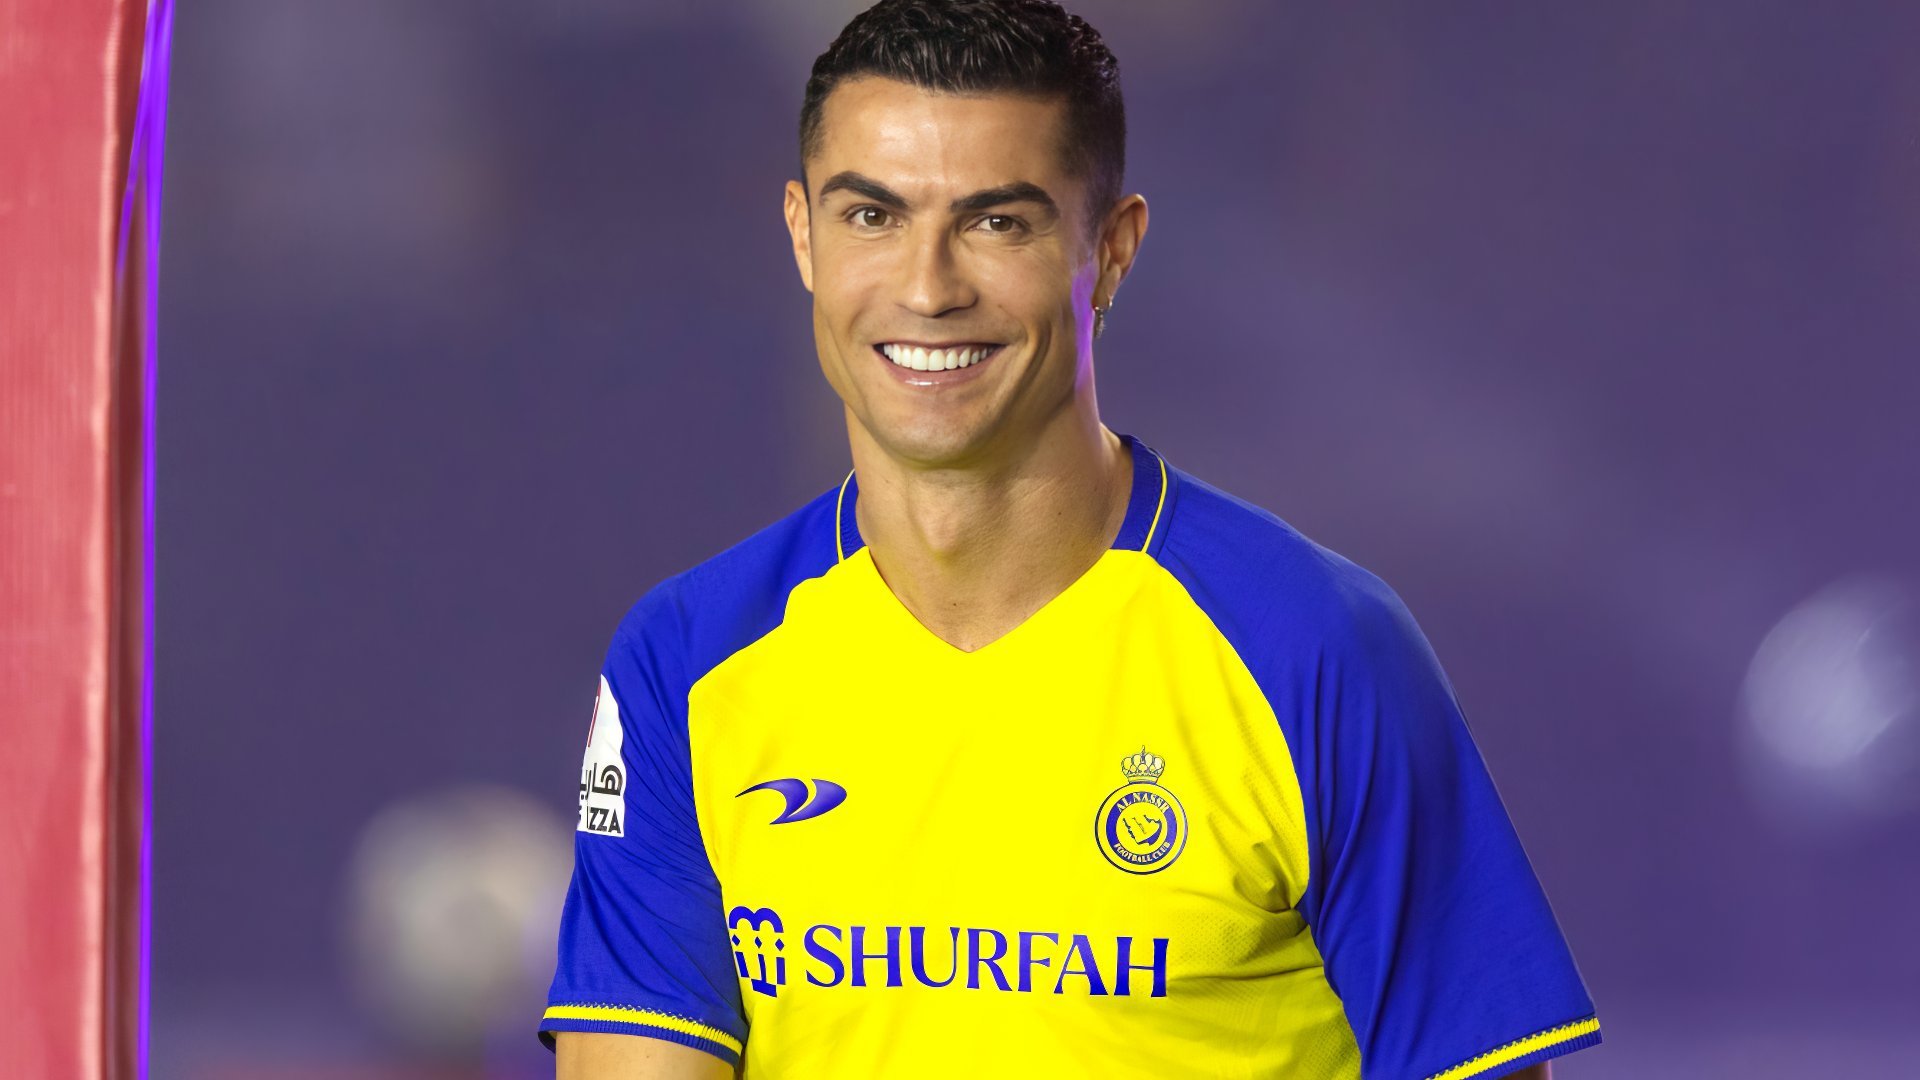 Fondos de pantalla Cristiano Ronaldo in Al-Nassr